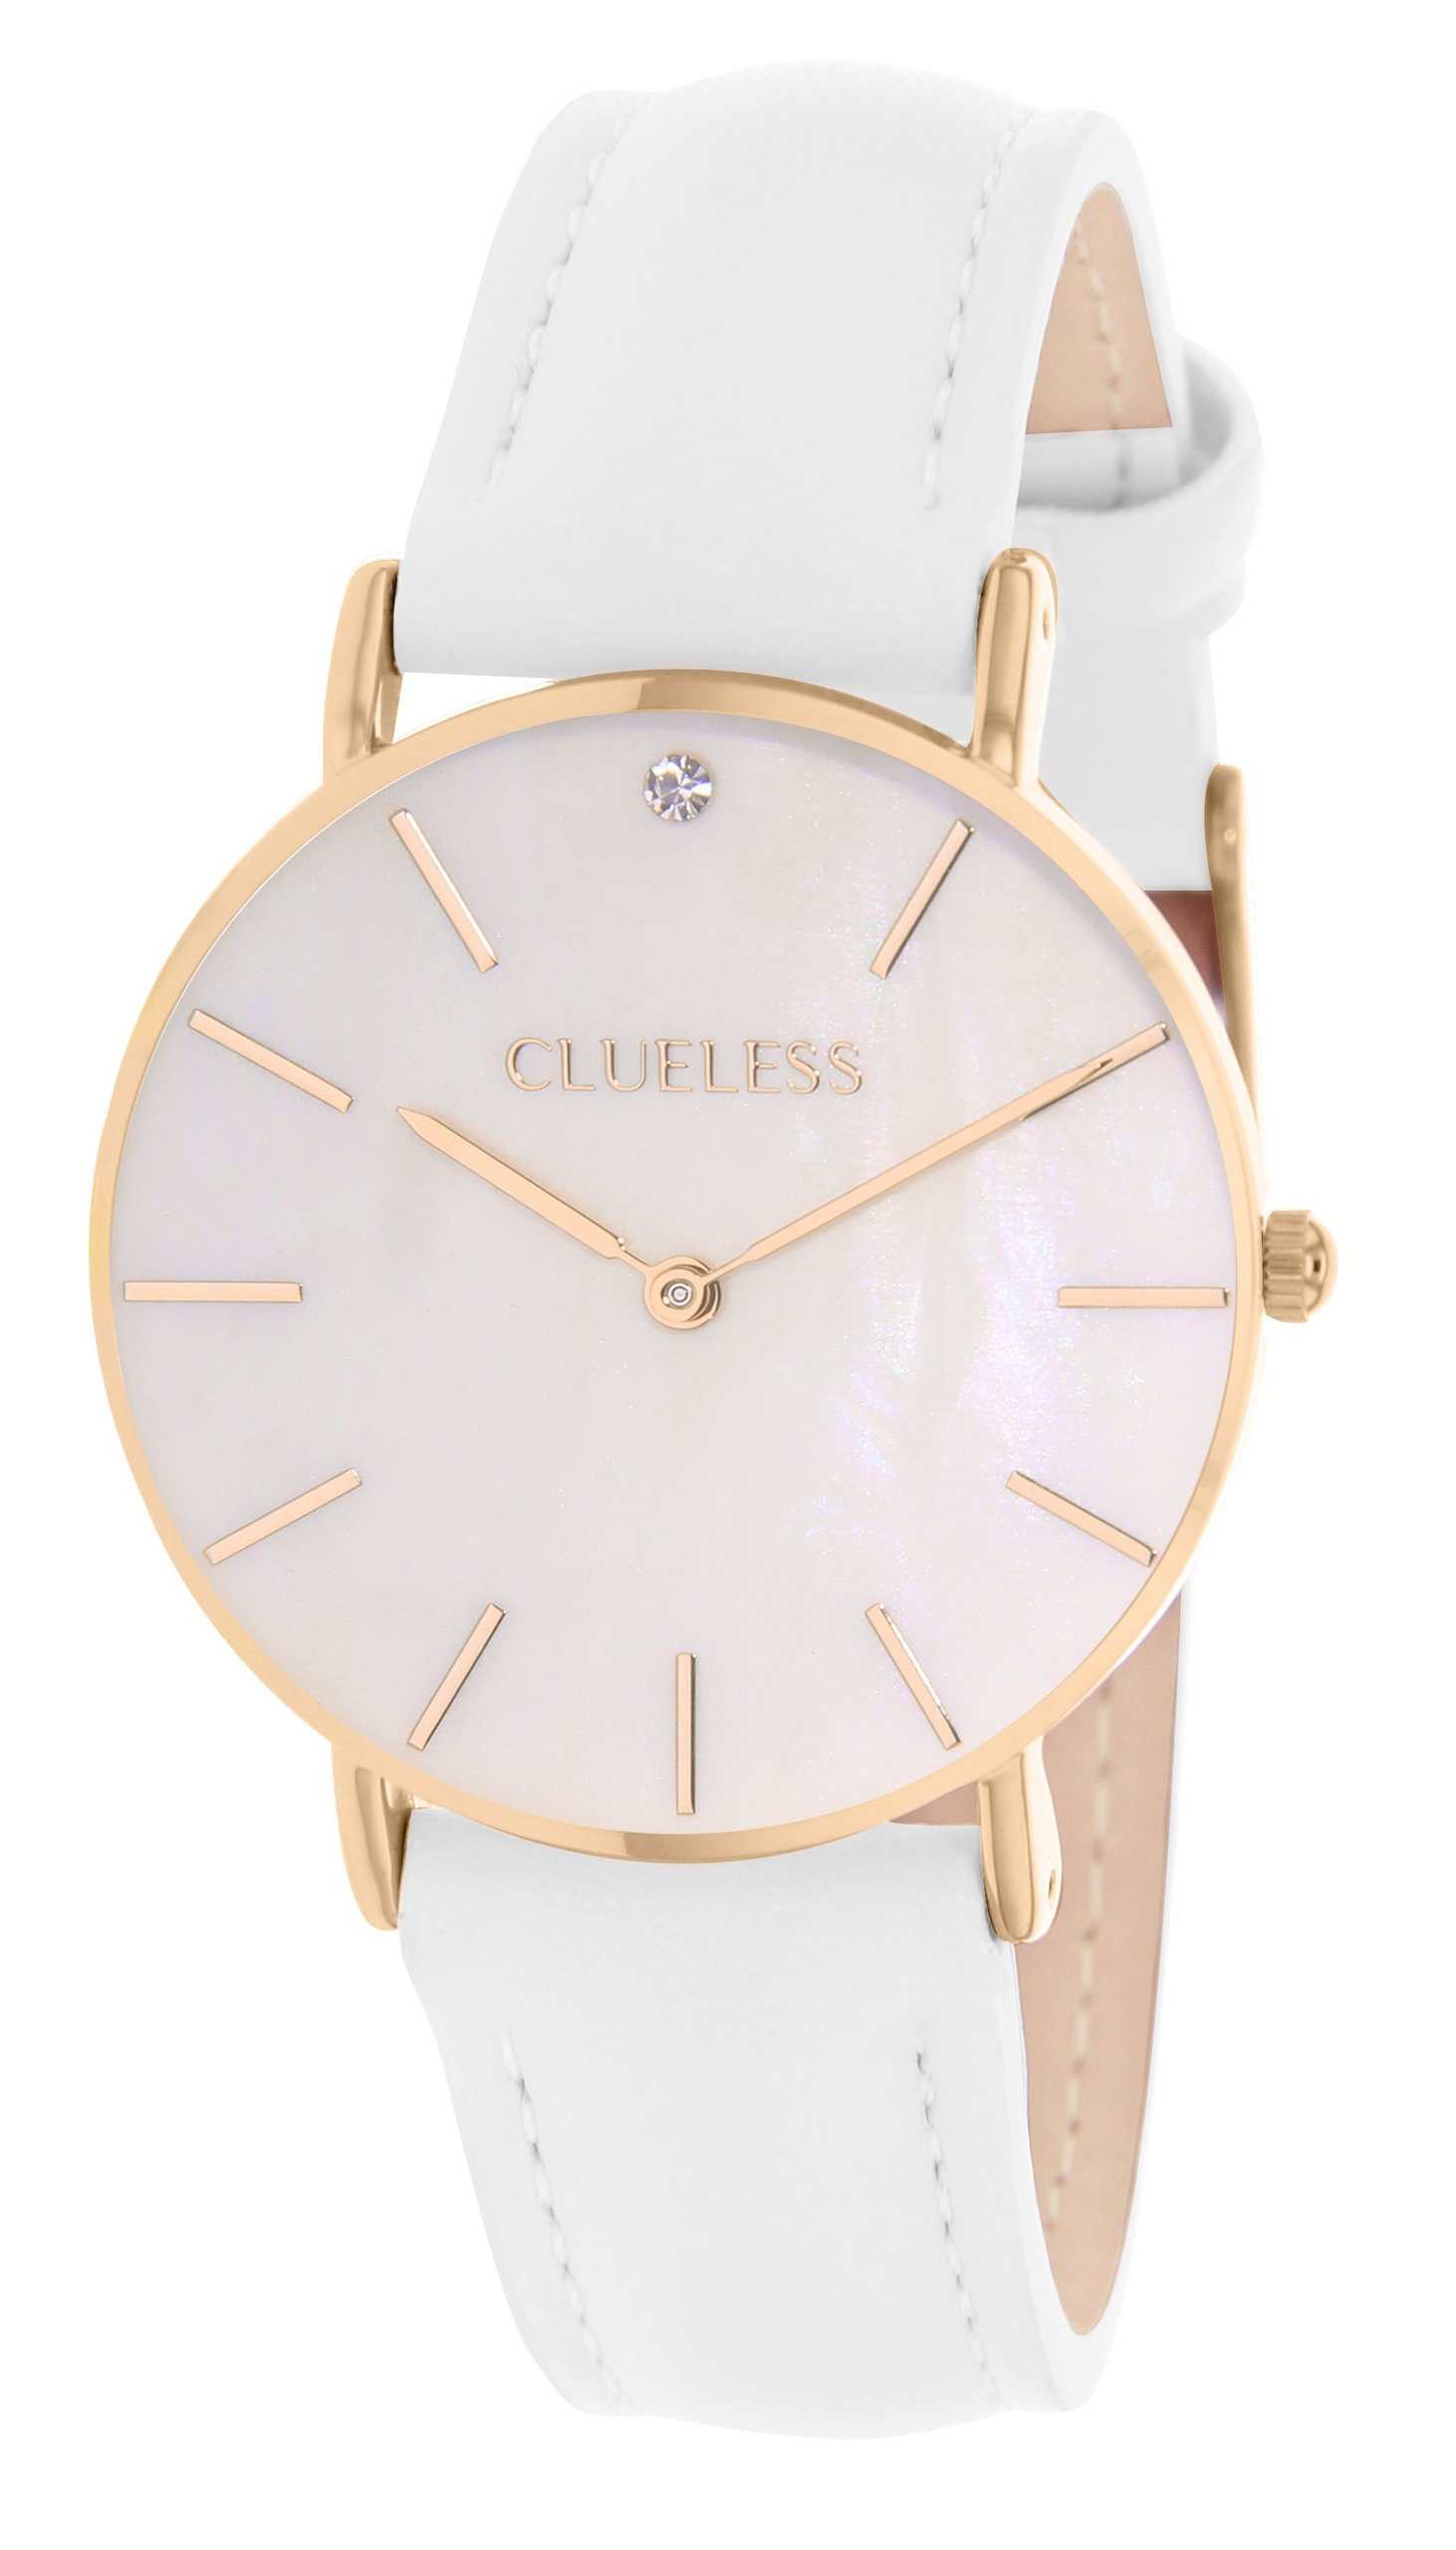 Dámské hodinky s bílým koženým páskem Clueless